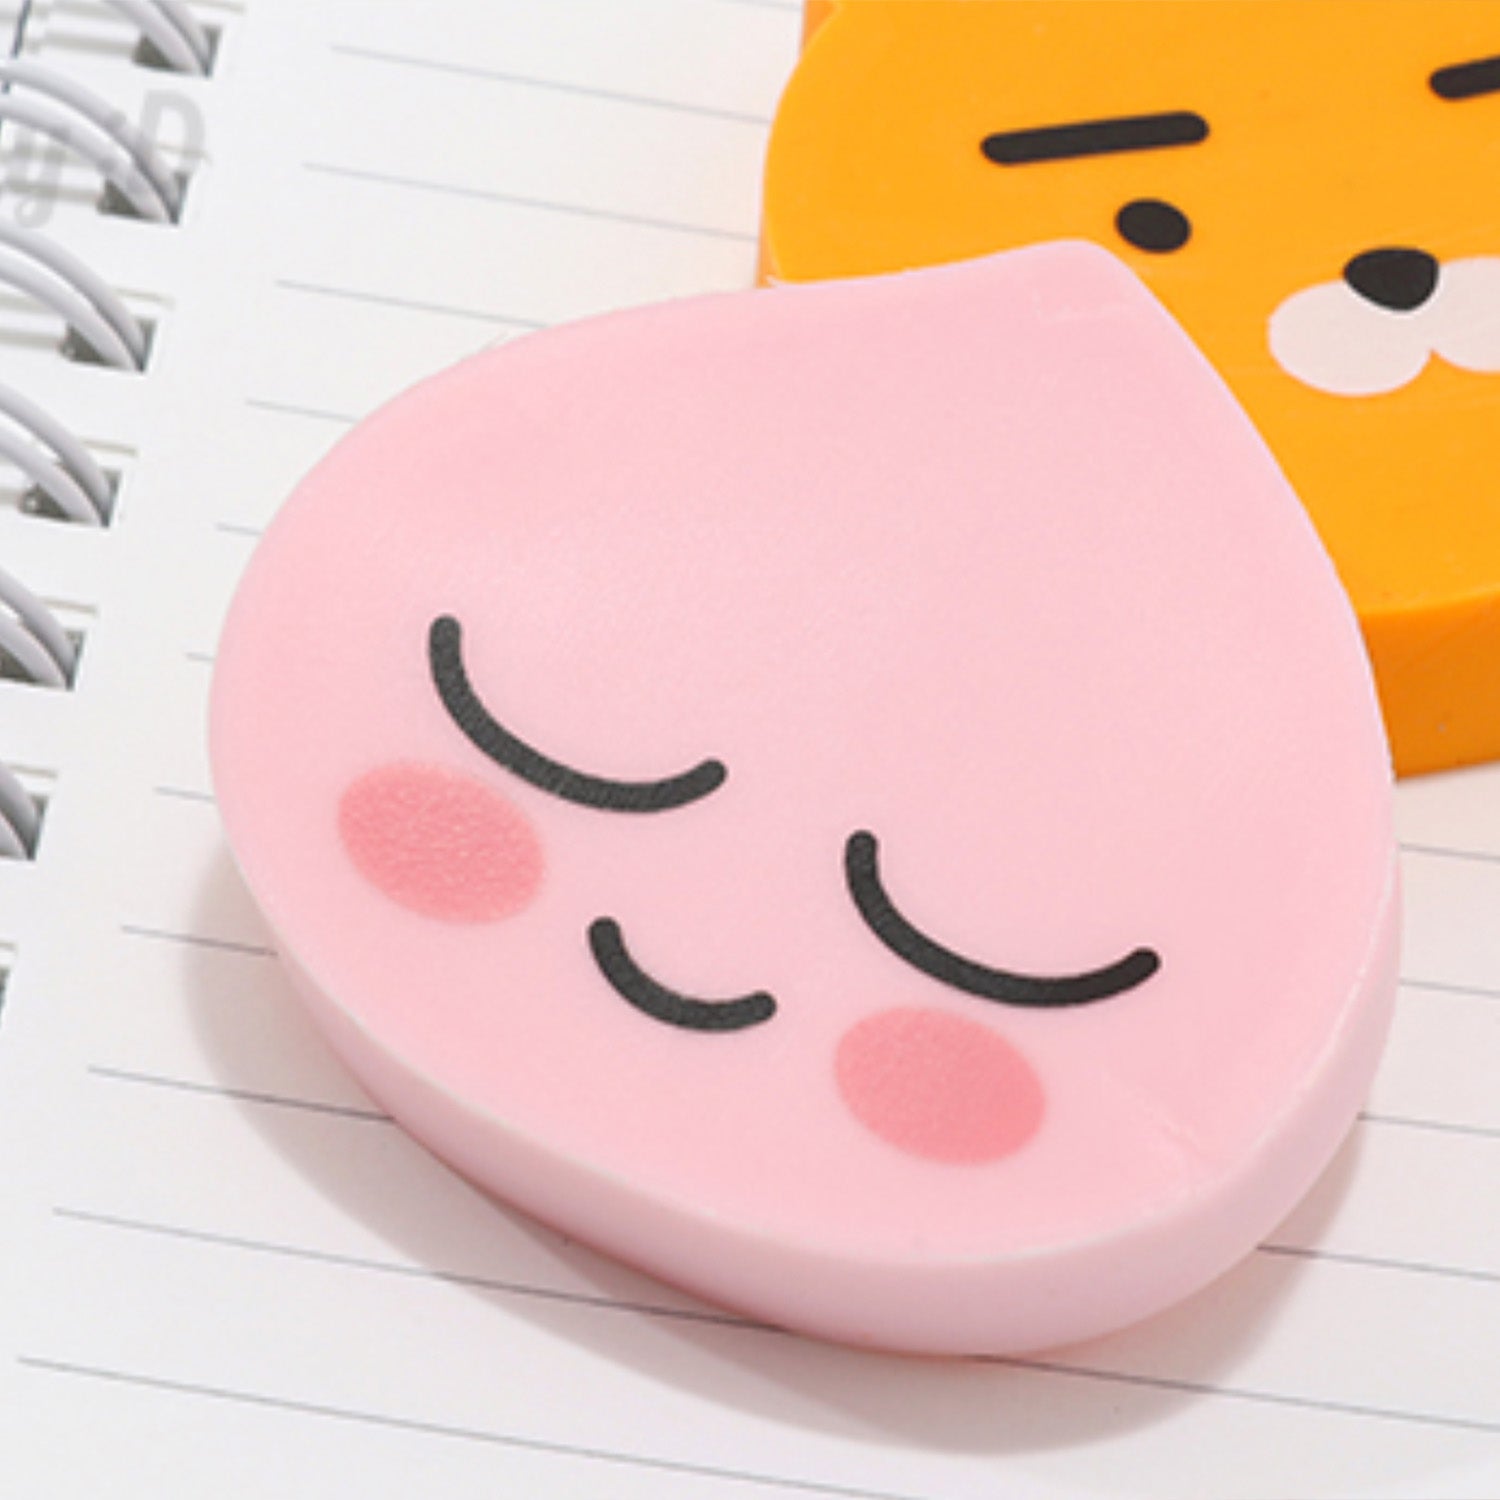 Kakao Friends Pencil Zipper Pouch Case And Cute Character Face Eraser Skoopmarket 9783